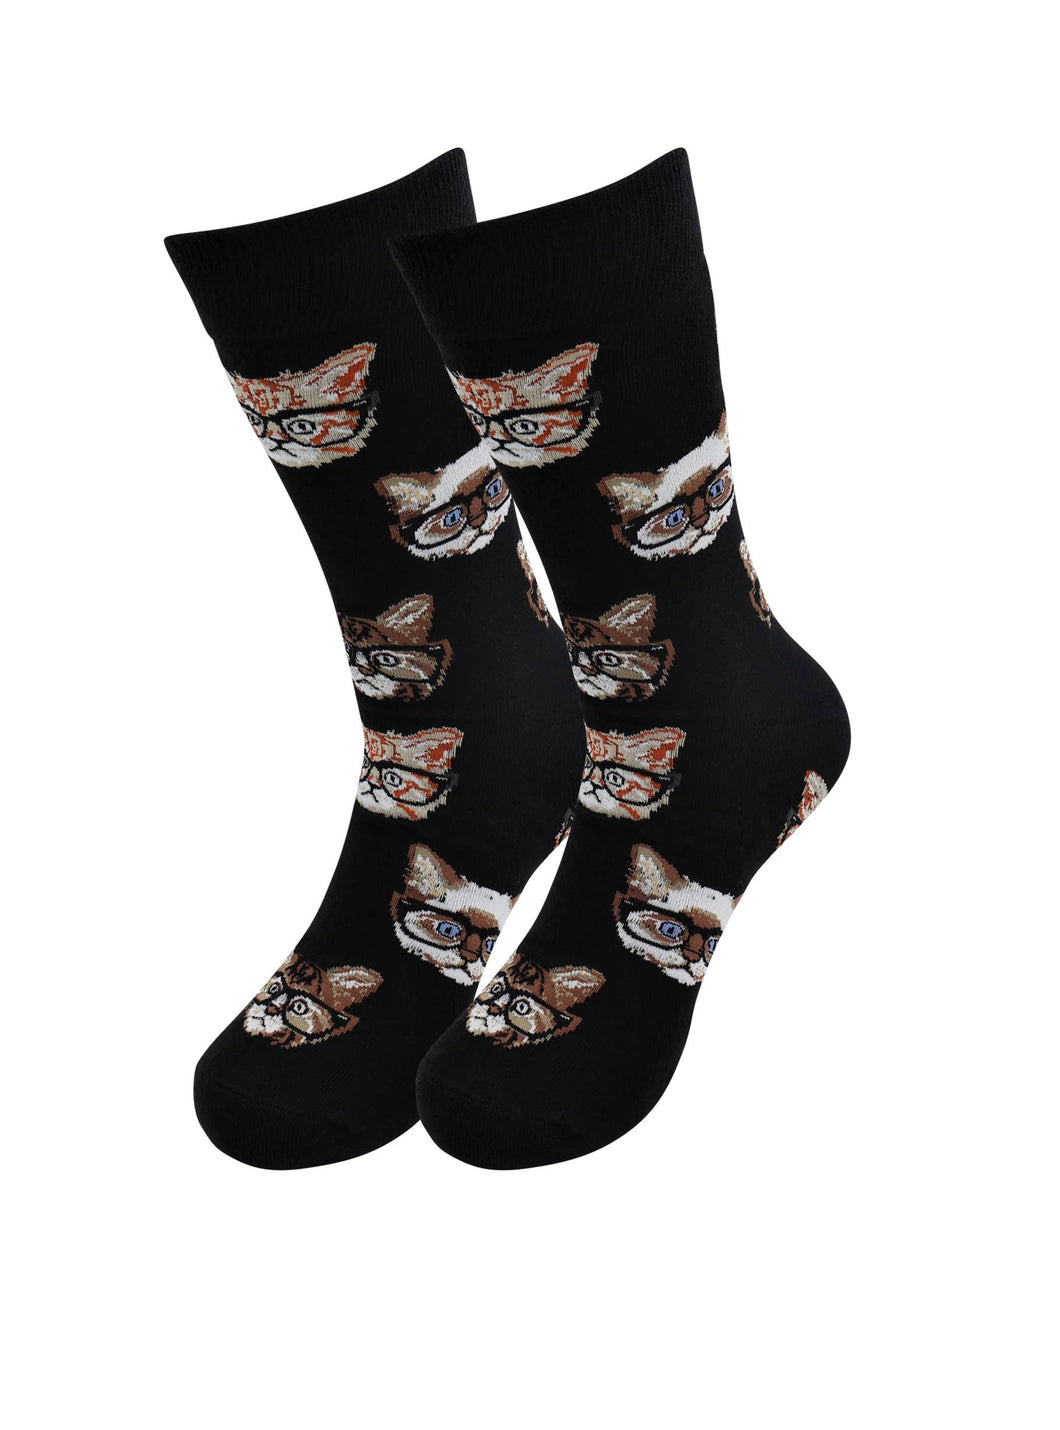 Cat Socks - Comfortable Kitty Socks - for Men and Women